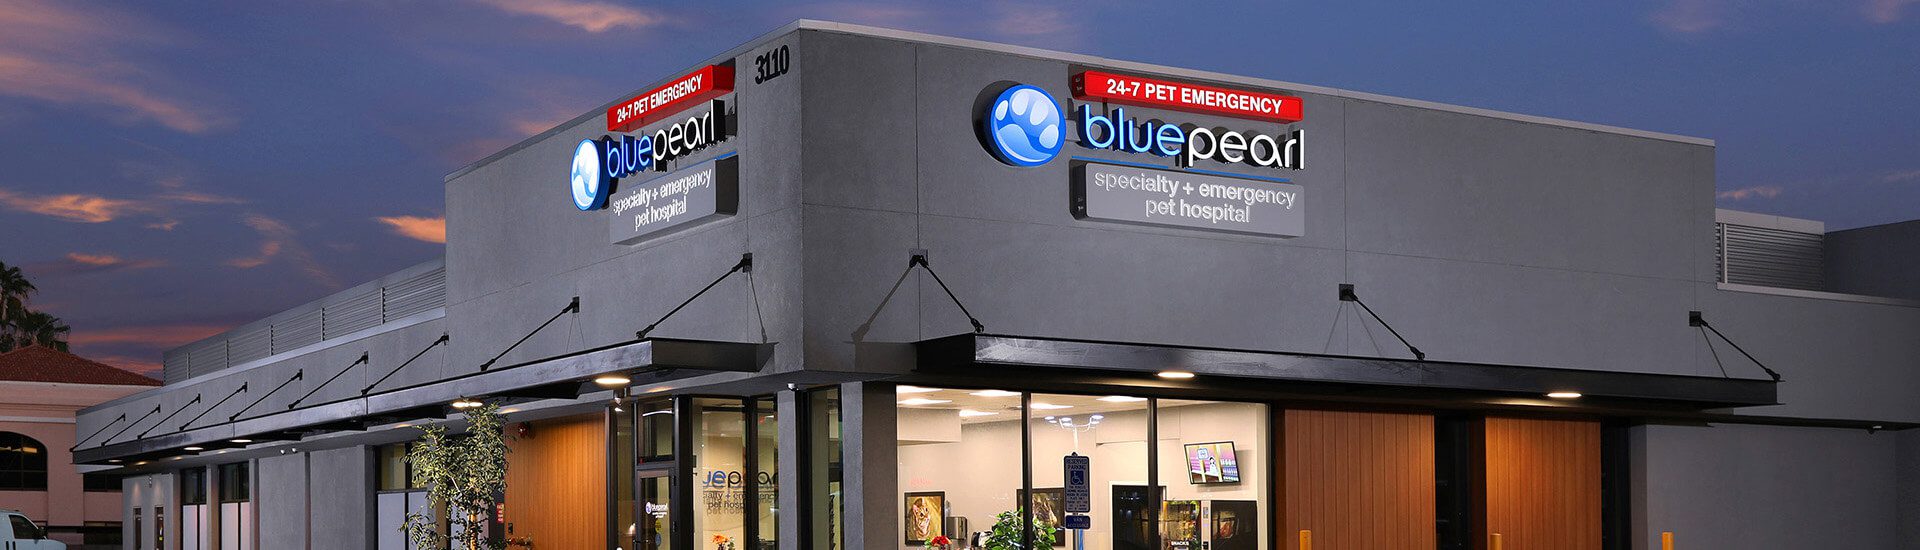 BluePearl Pet Hospital | Phoenix, AZ | Emergency Vet